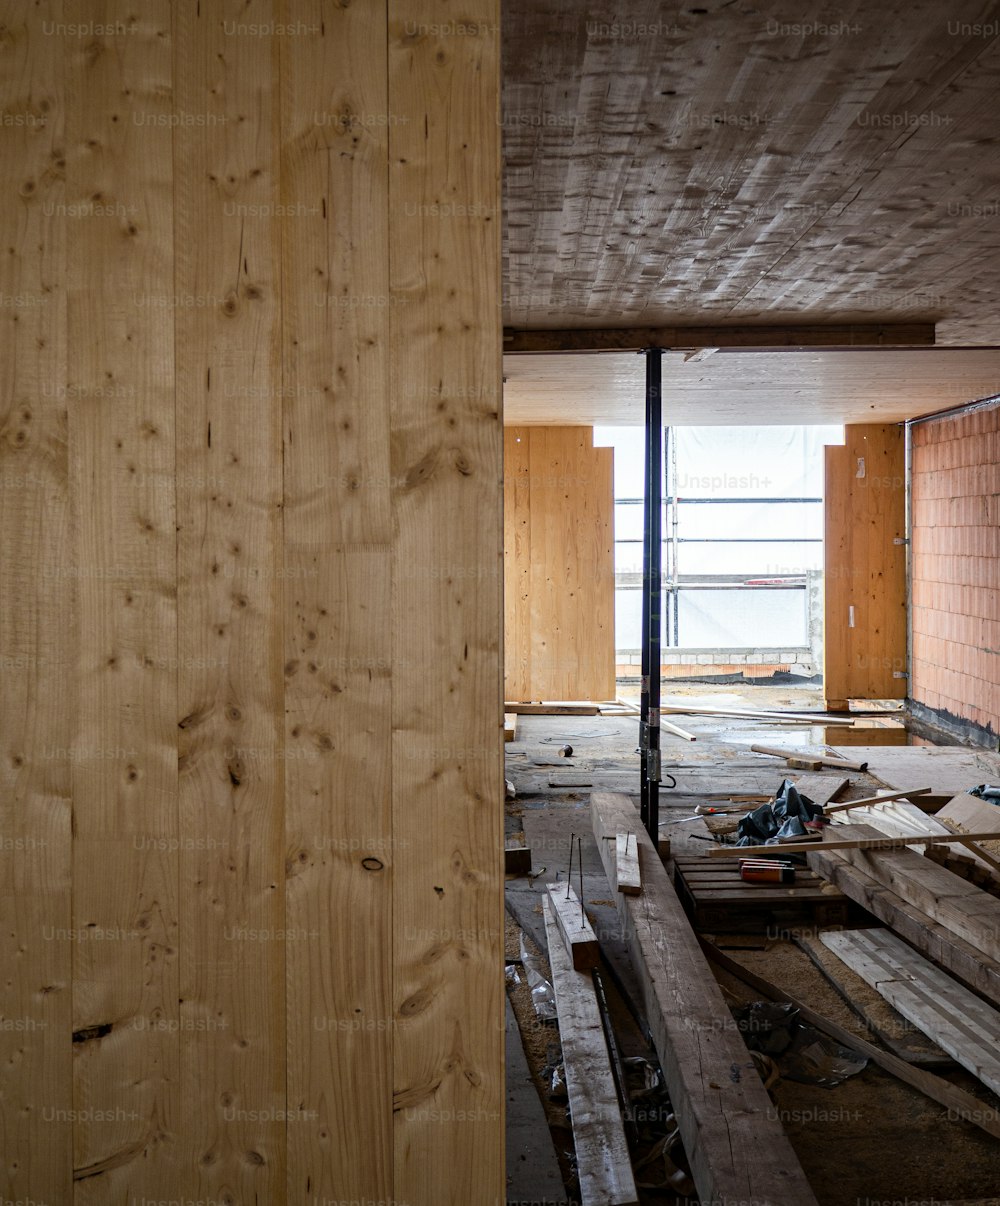 Una habitación sin terminar con paredes y pisos de madera